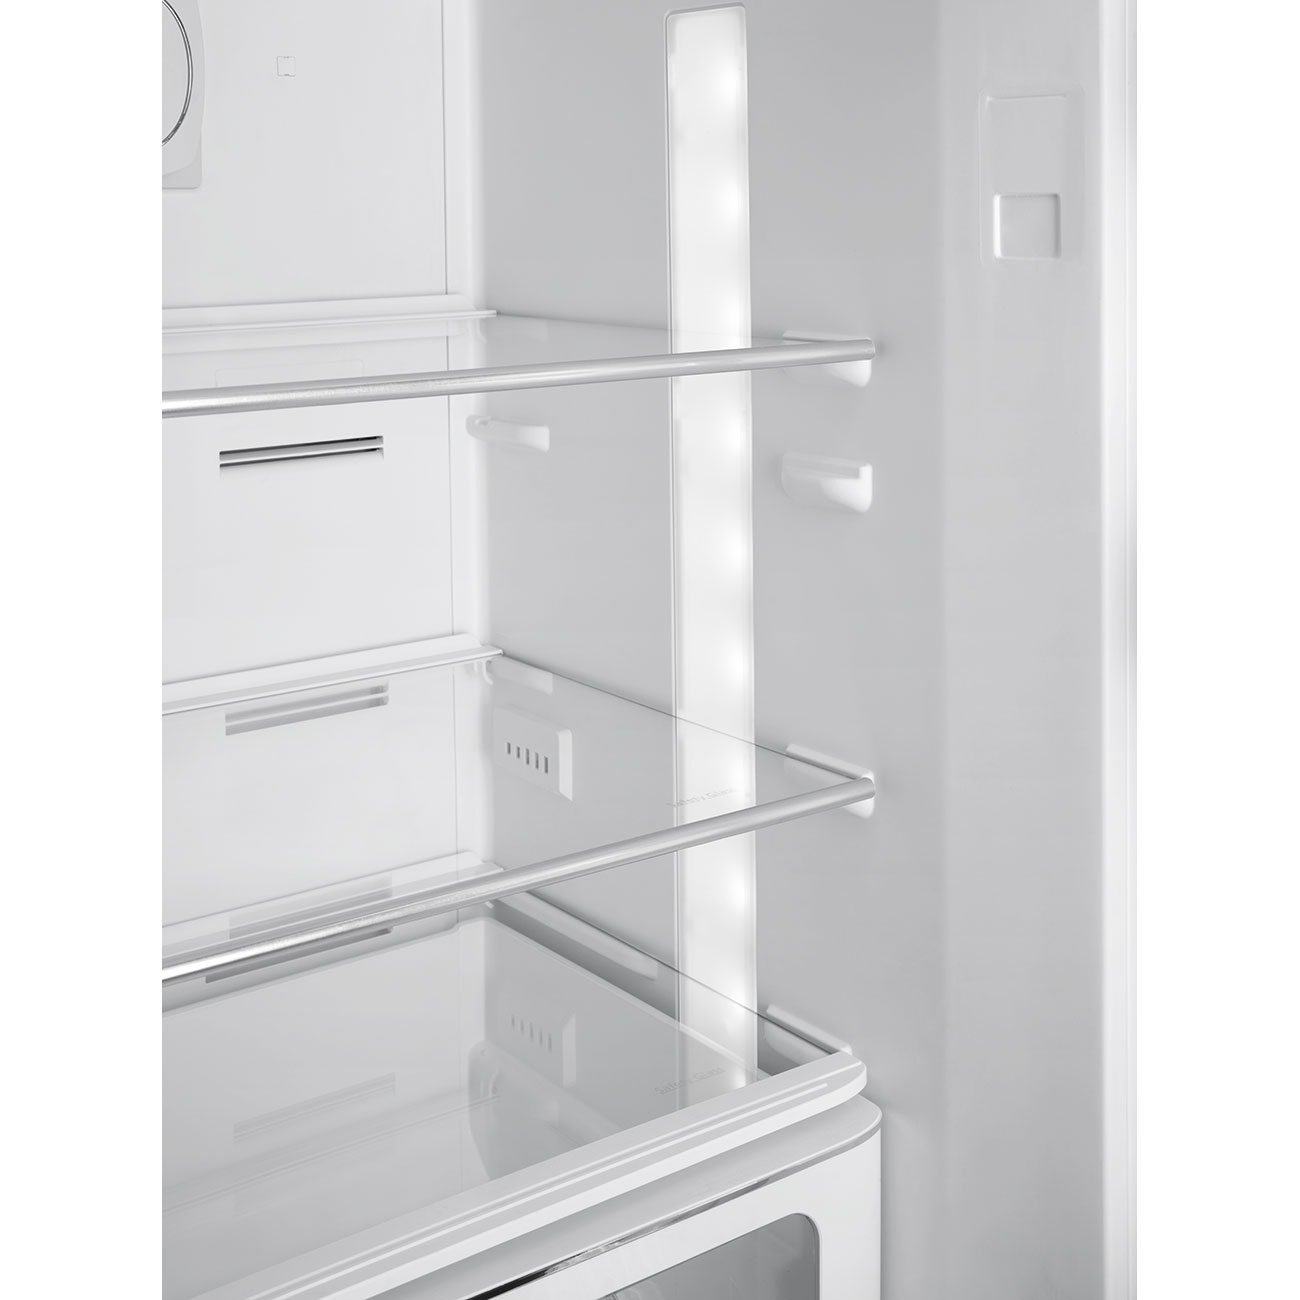 Silver refrigerator - Smeg_2